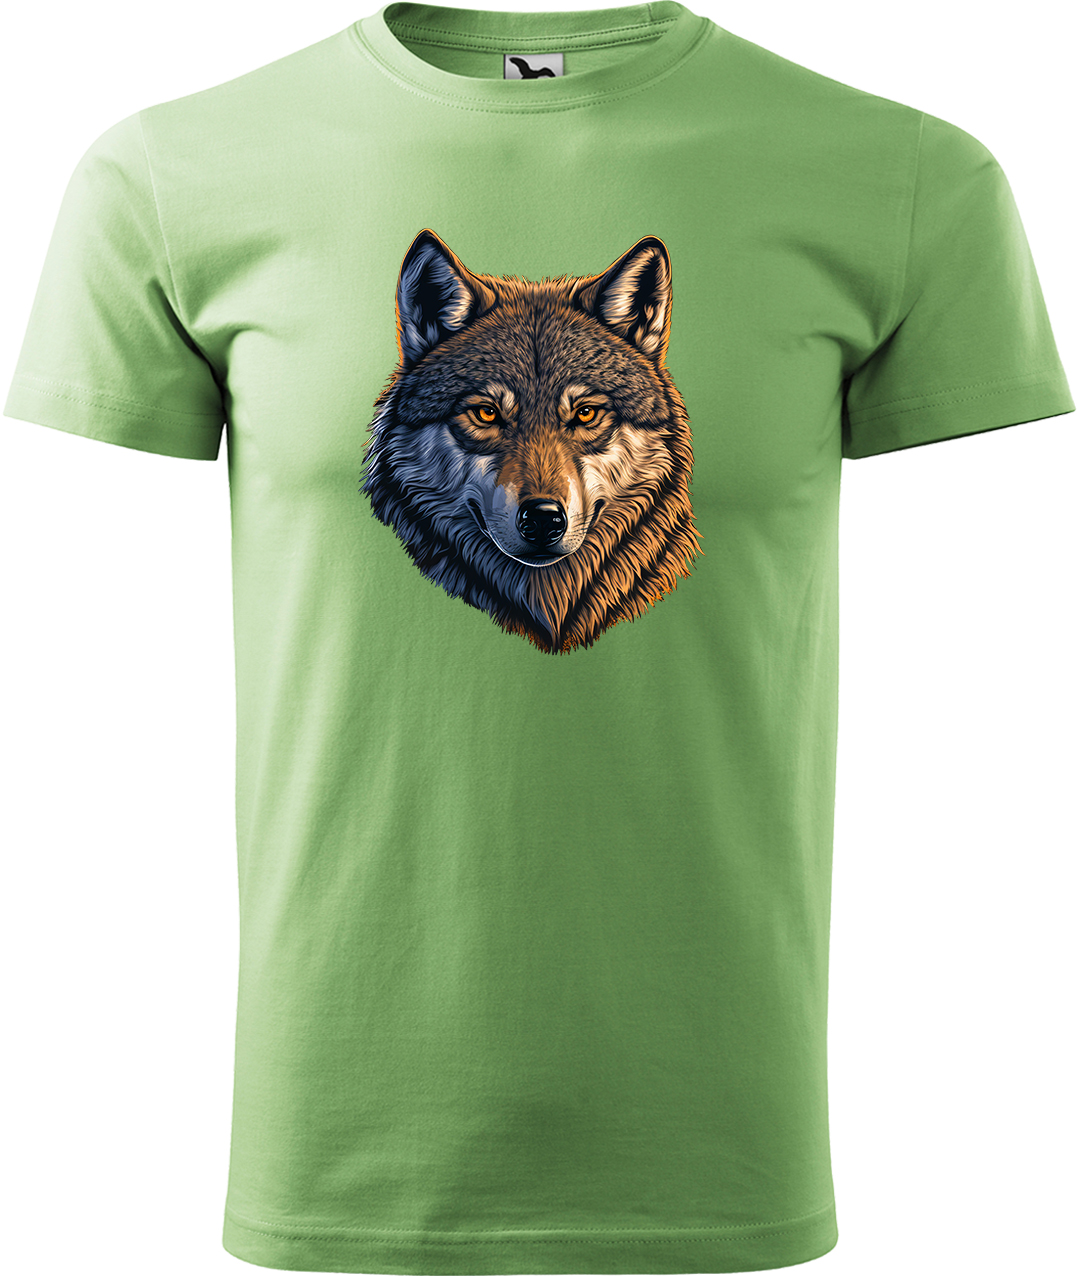 Pánské tričko s vlkem - Hlava vlka Velikost: L, Barva: Trávově zelená (39), Střih: pánský